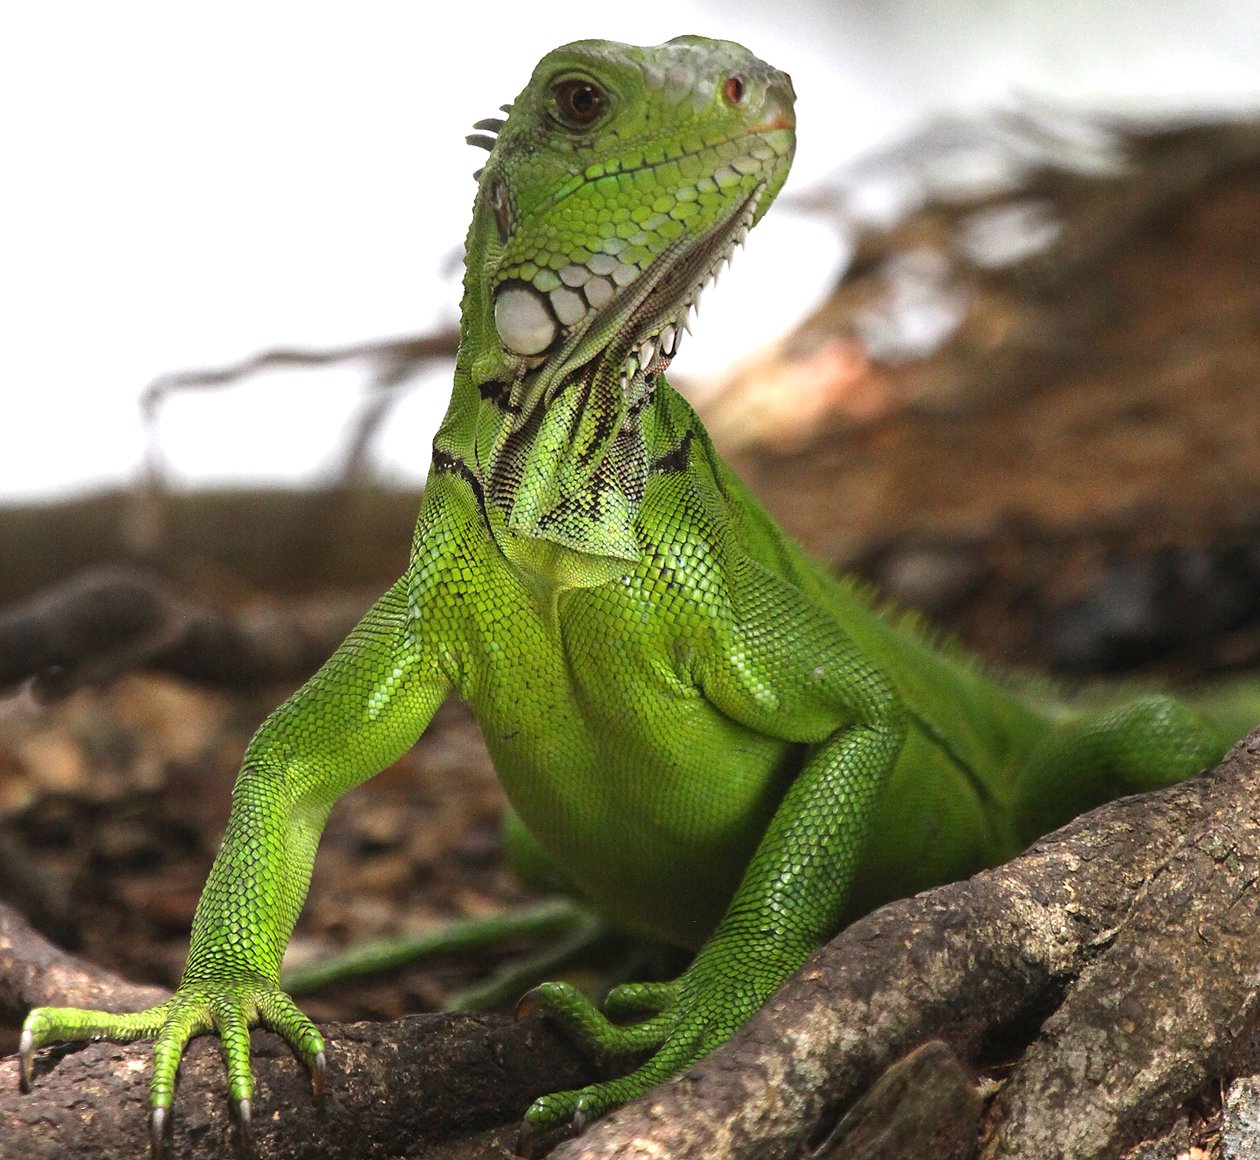 Green Iguana in Trinidad and Tobago